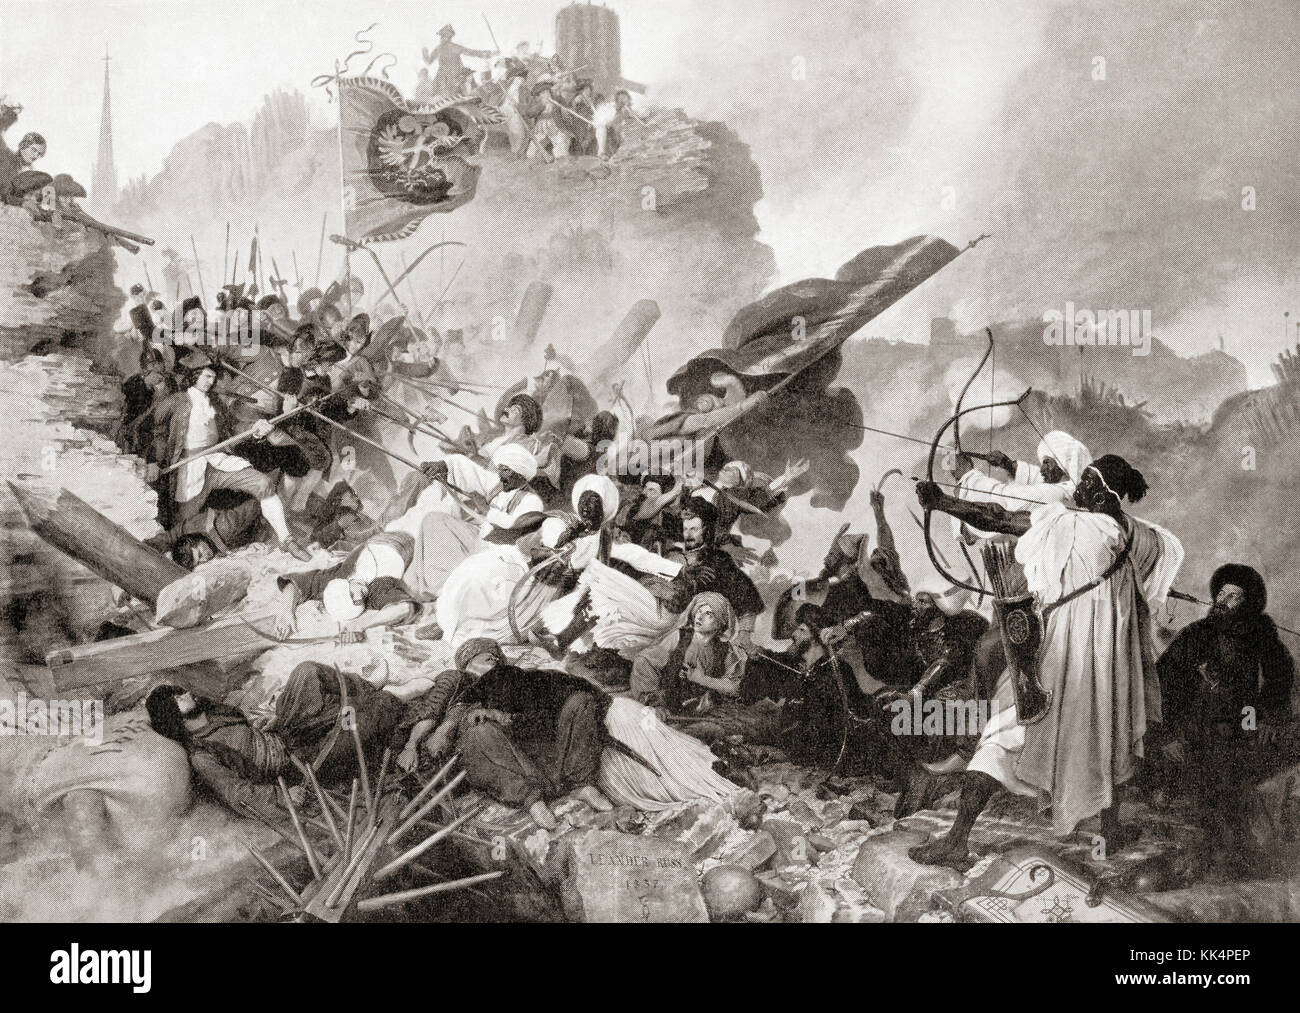 La batalla de Viena, la montaña kahlenberg, en Viena, el 12 de septiembre de 1683 después de que la ciudad había sido asediada por el imperio otomano durante dos meses. De hutchinson de la historia de las naciones, publicado en 1915. Foto de stock